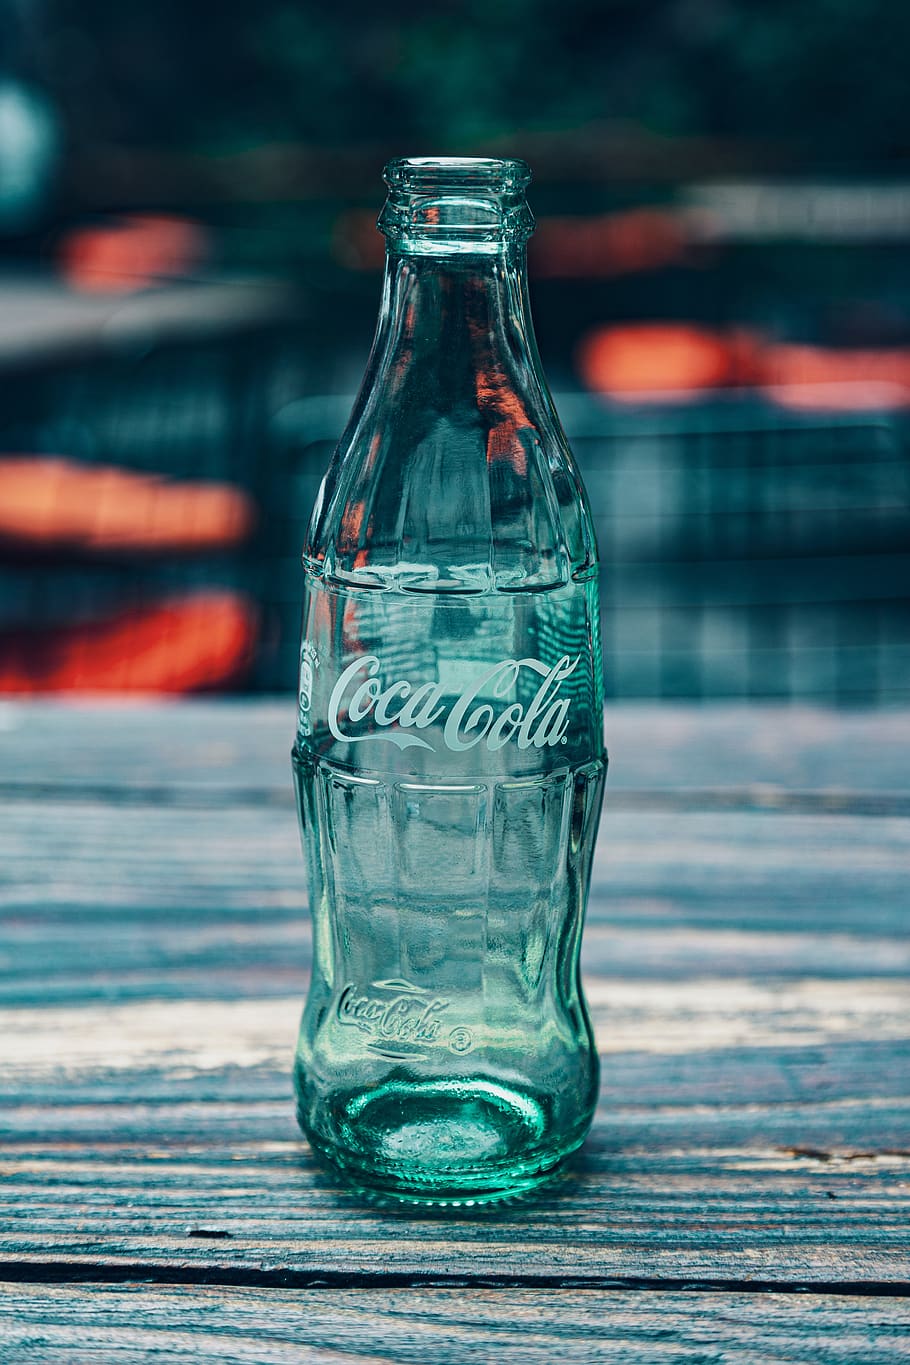 coca-cola, coca, bebida, bicarbonato de sodio, botella, refrescos, líquido, fresco, transparente, vidrio